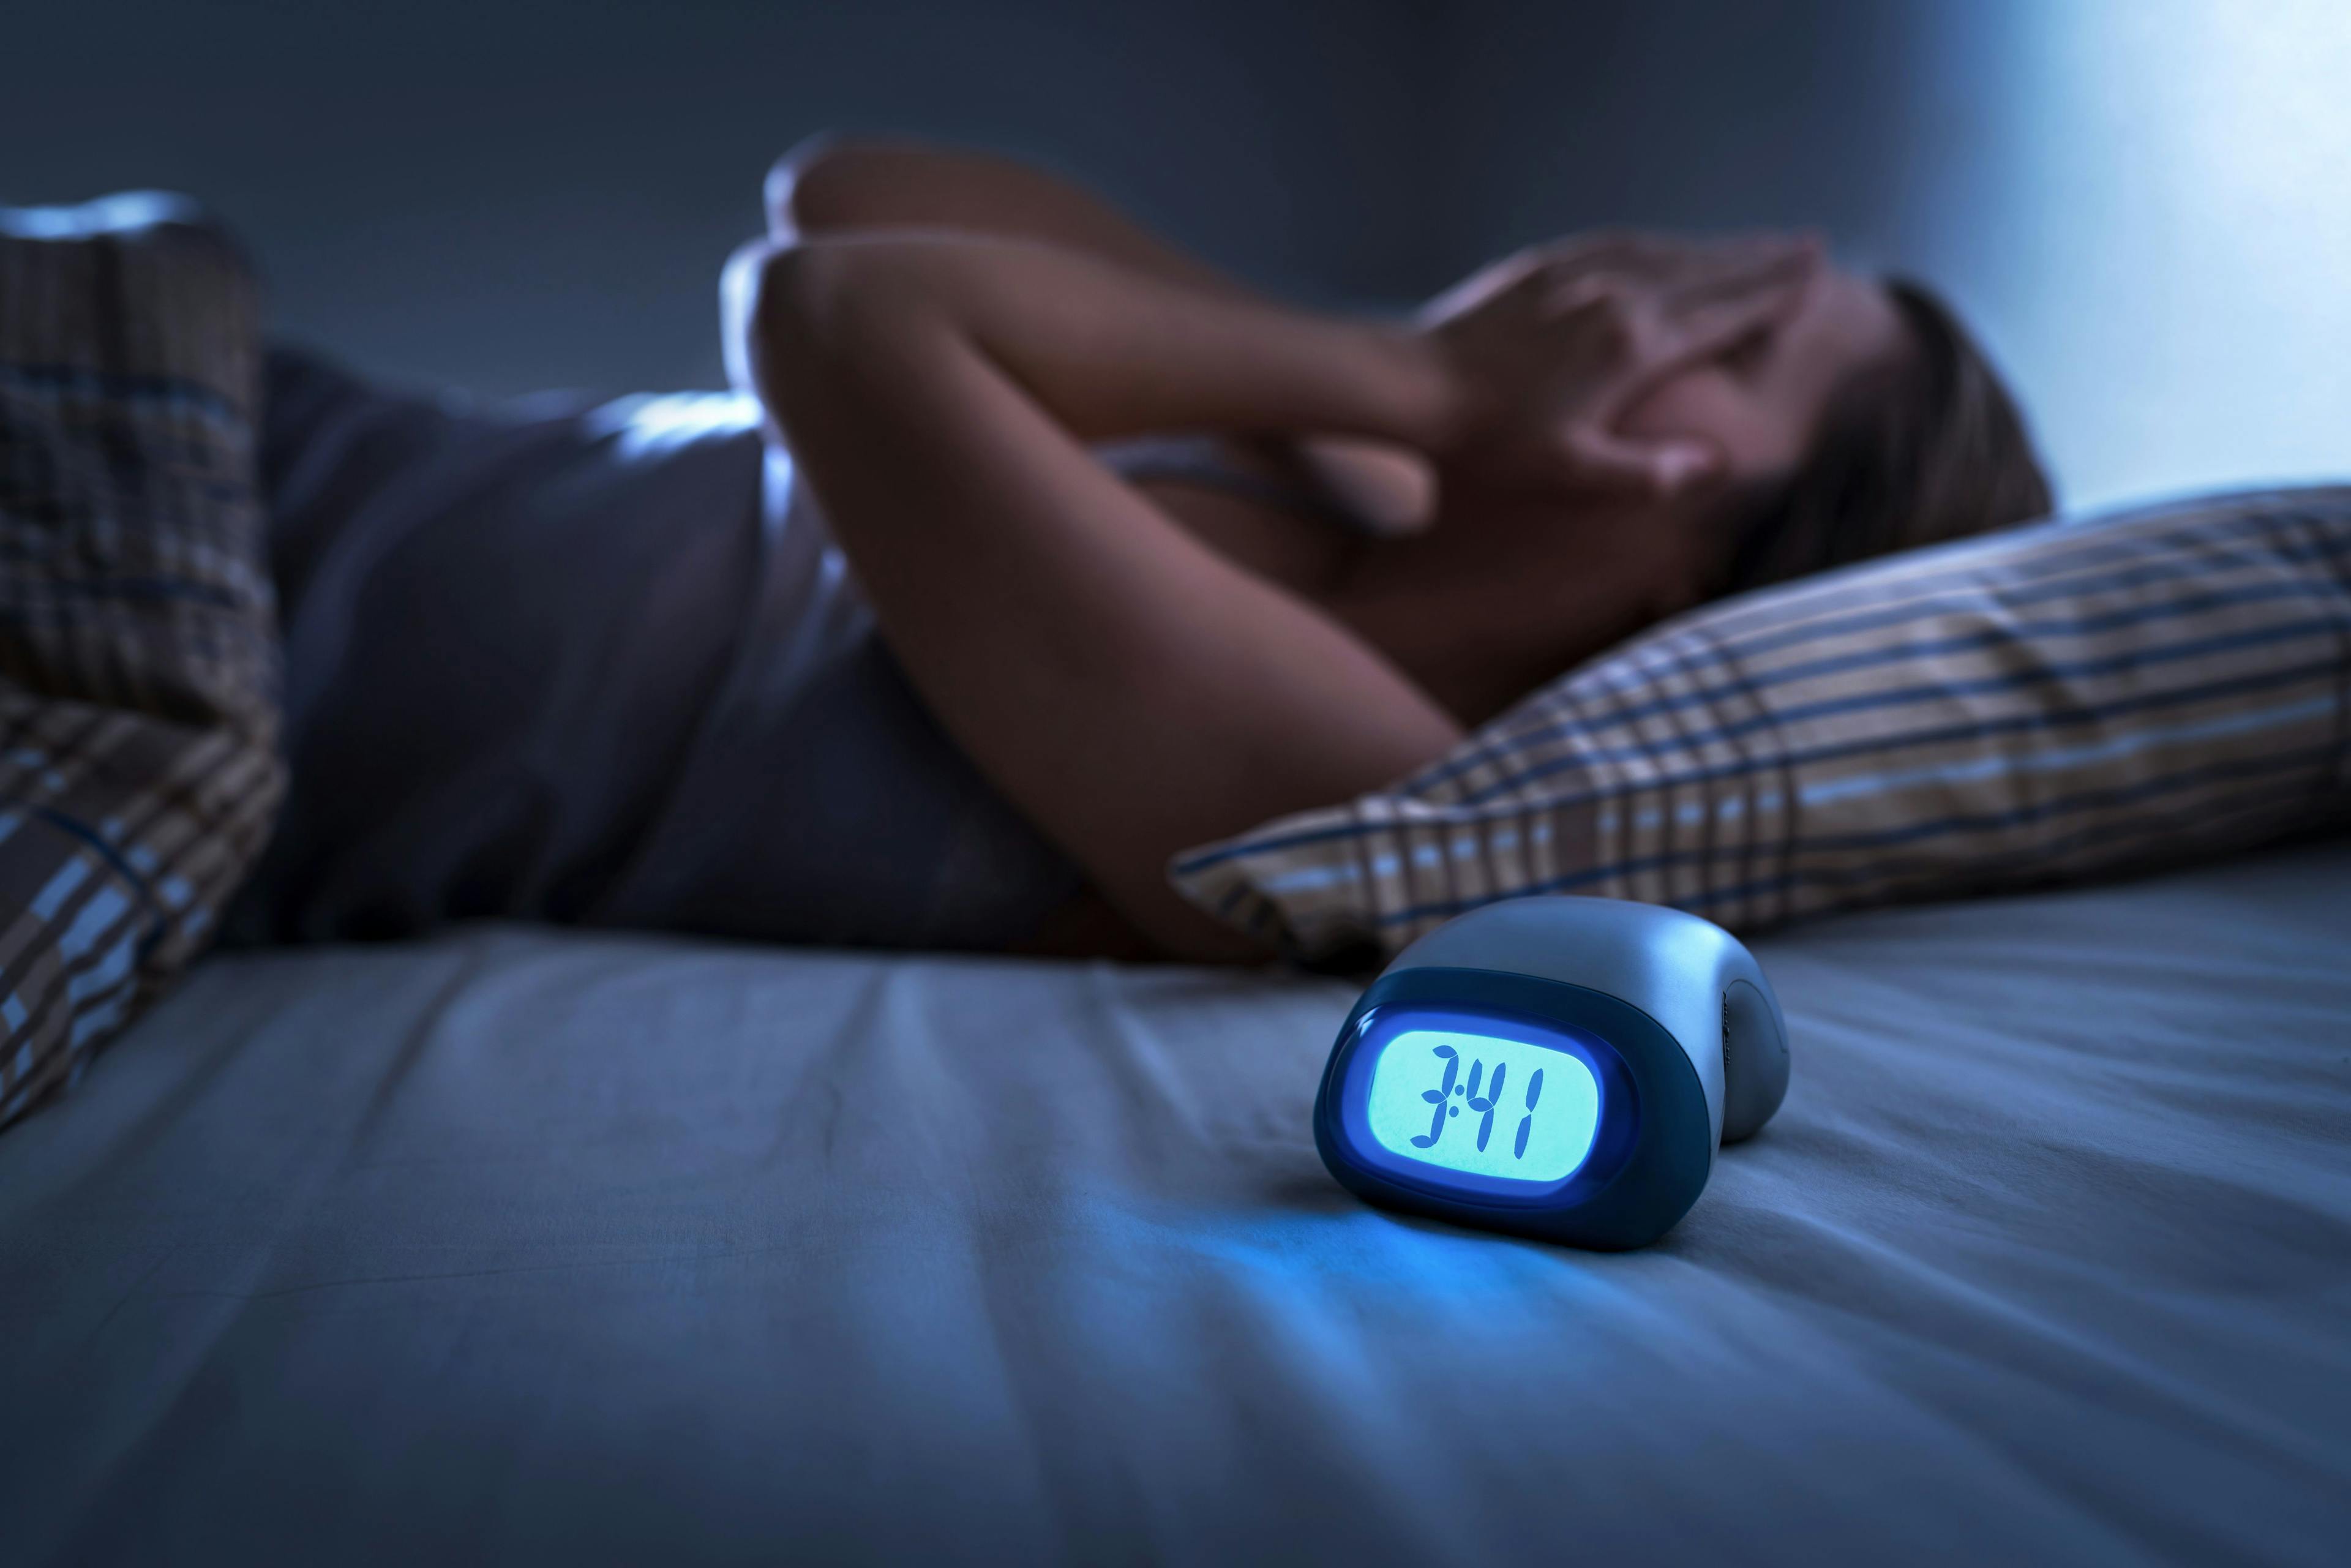 Sleep apnea may worsen joint pain, fatigue in postmenopausal women